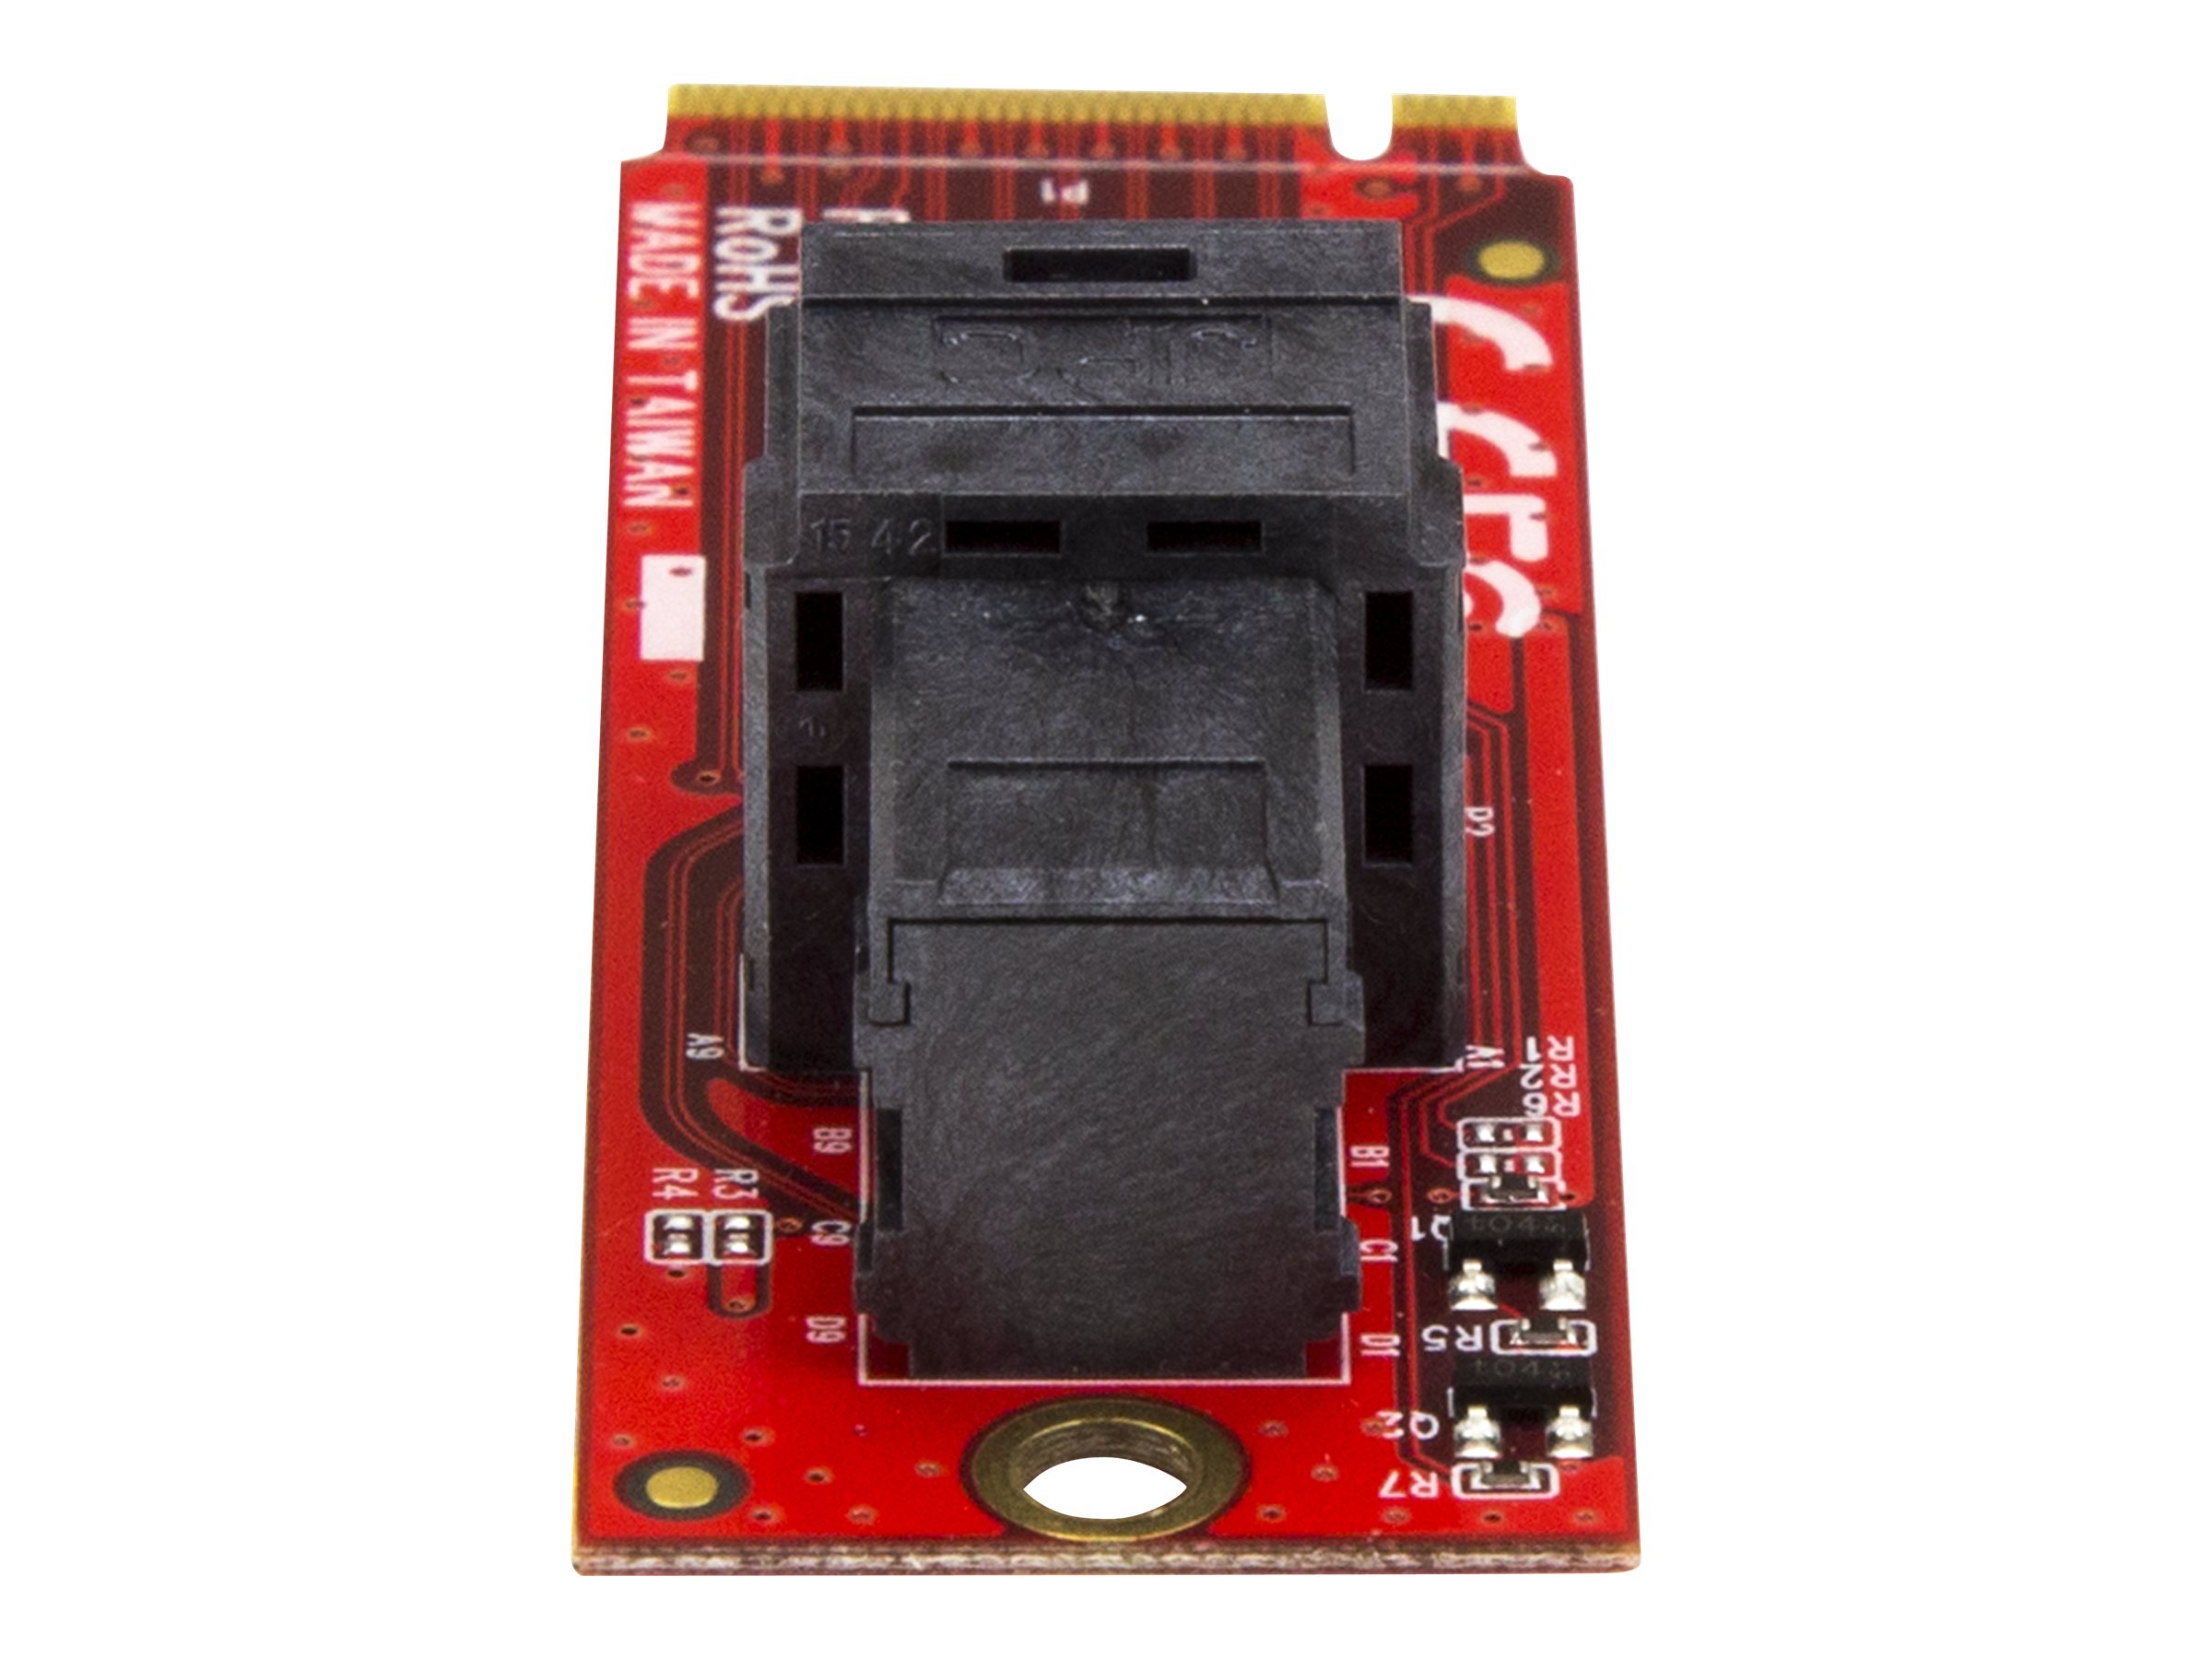 StarTech.com U.2 (SFF-8643) auf M.2 PCI Express 3.0 x4 Adapterkarte für 2,5" U.2 NVMe SSD - Schnittstellenadapter - 2.5" (6.4 cm)